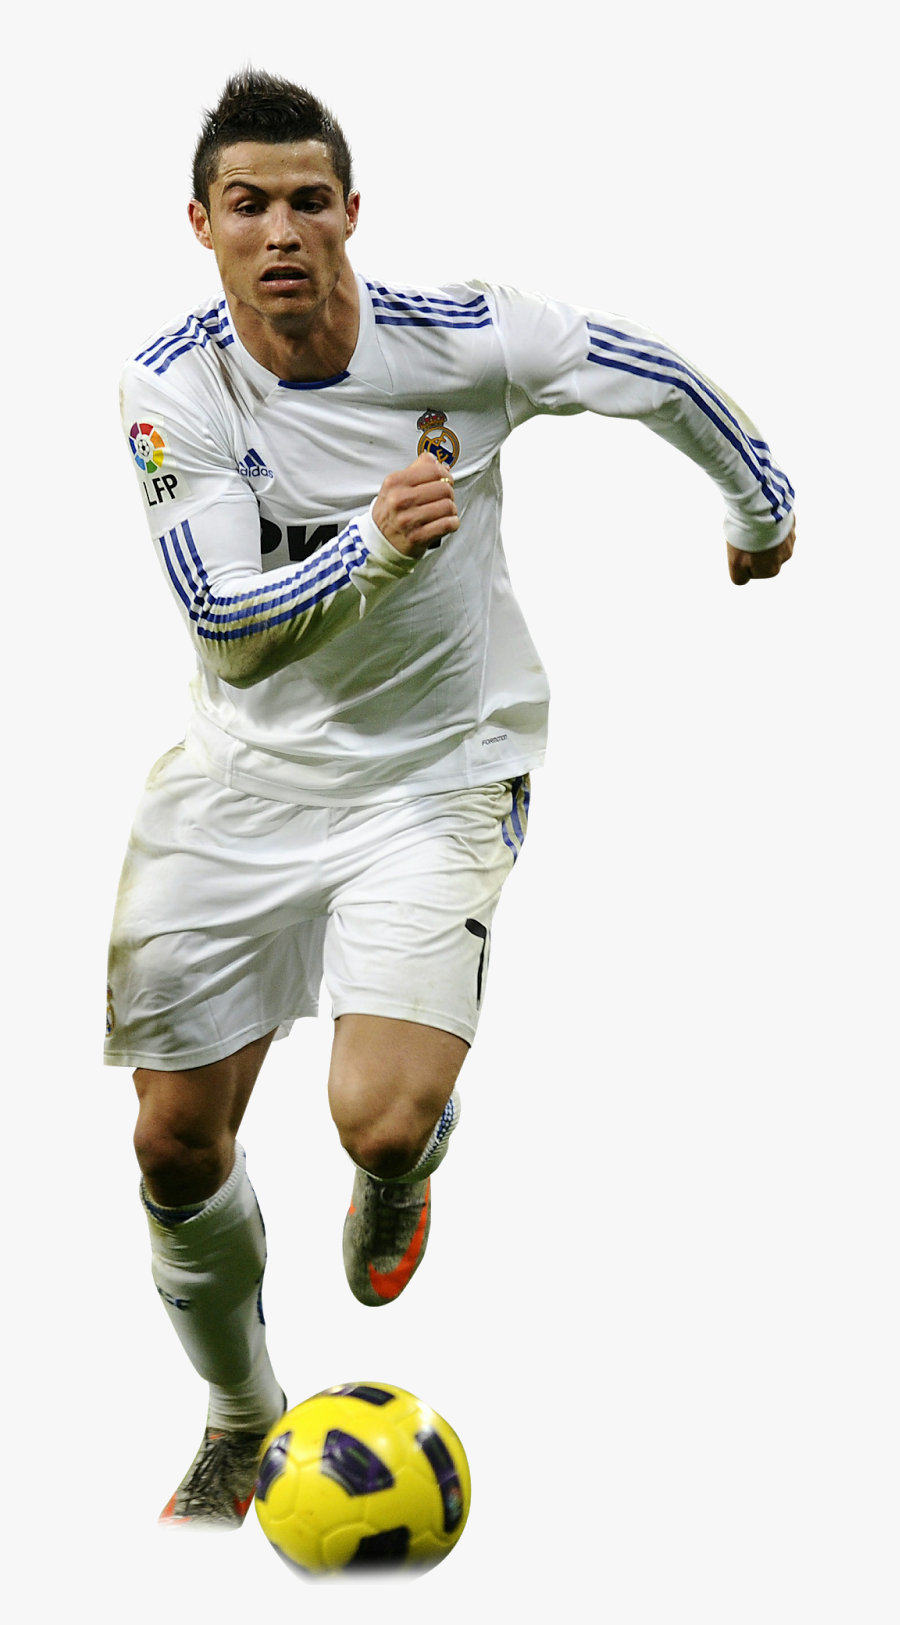 Cristiano Ronaldo Png File - Imagenes De Cr7 En Png, Transparent Clipart